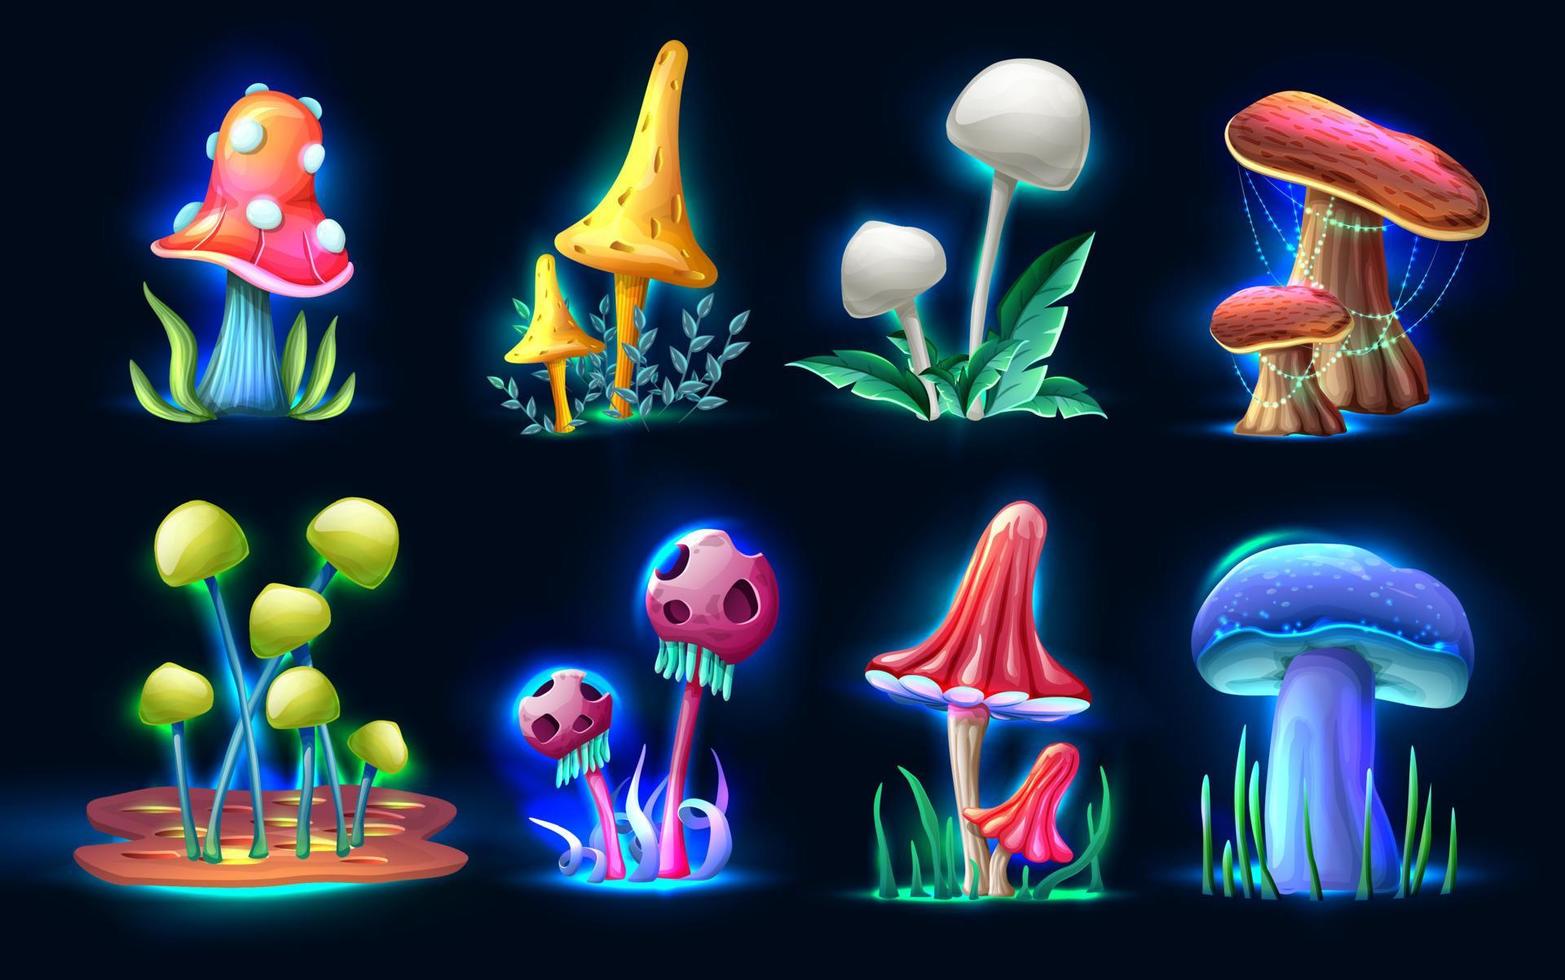 raccolta di funghi di fantasia magica in stile cartone animato vettoriale che brillano nel buio, isolati su sfondo bianco. per web, videogiochi, interfaccia utente, stampa design.